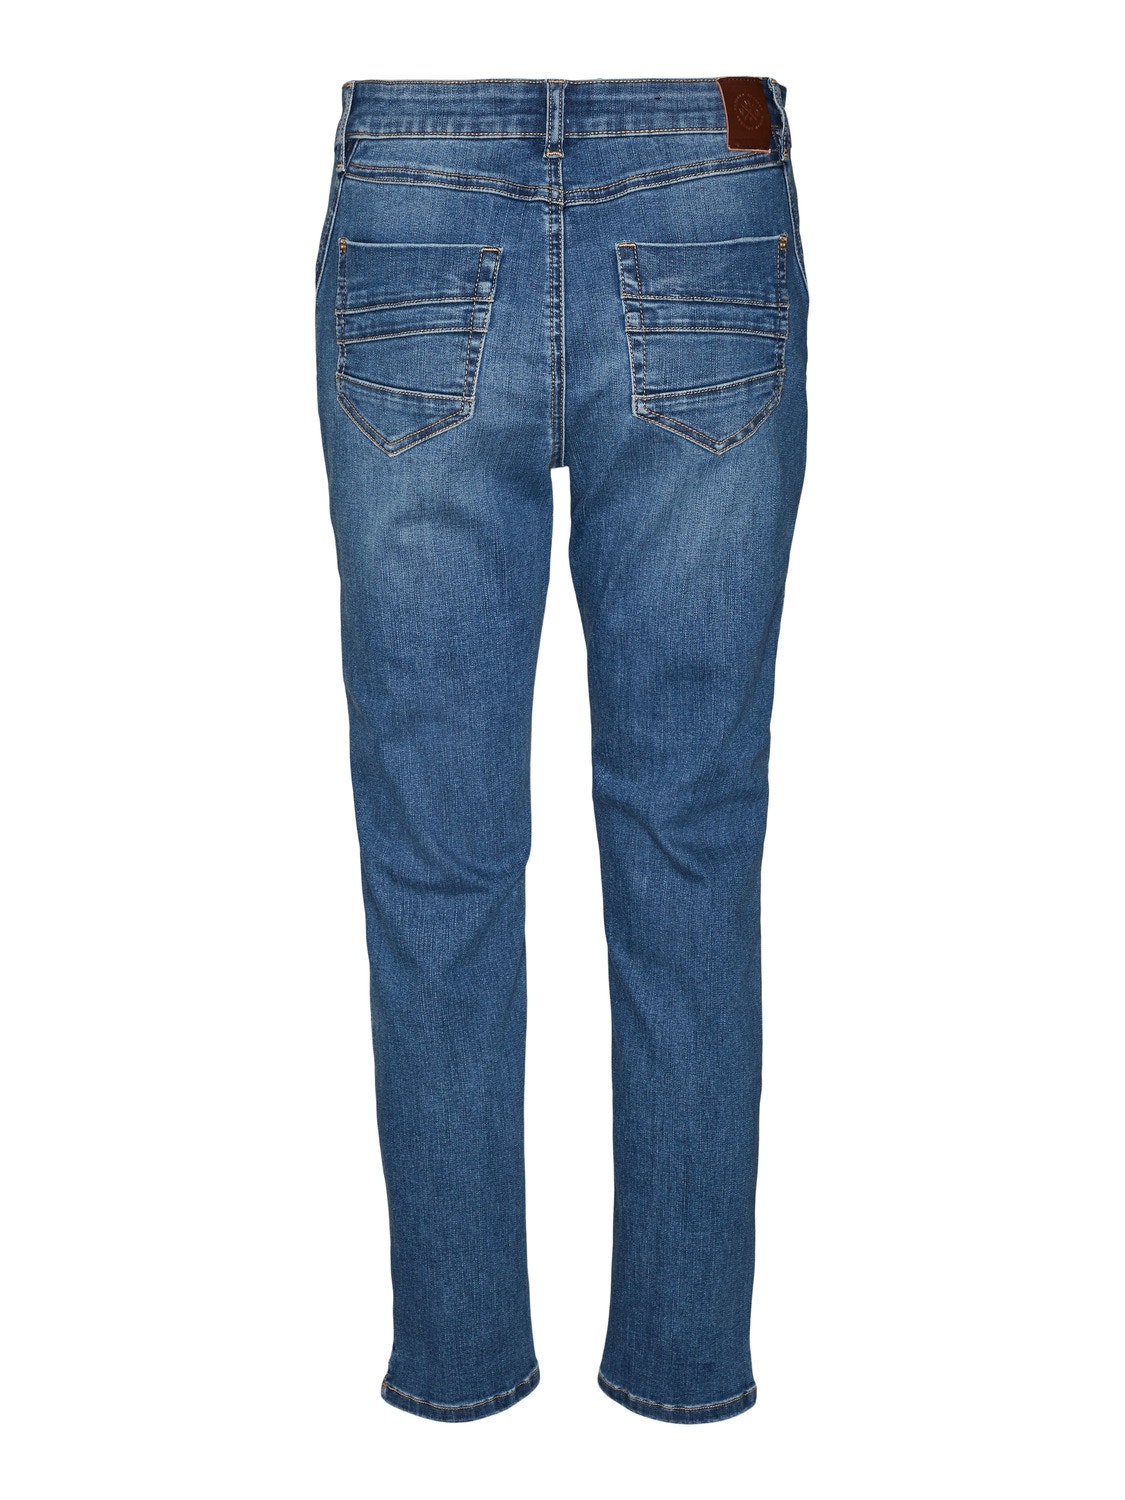 Vero Moda VMYOURS Krój tapered Jeans -Dark Blue Denim - 10297593